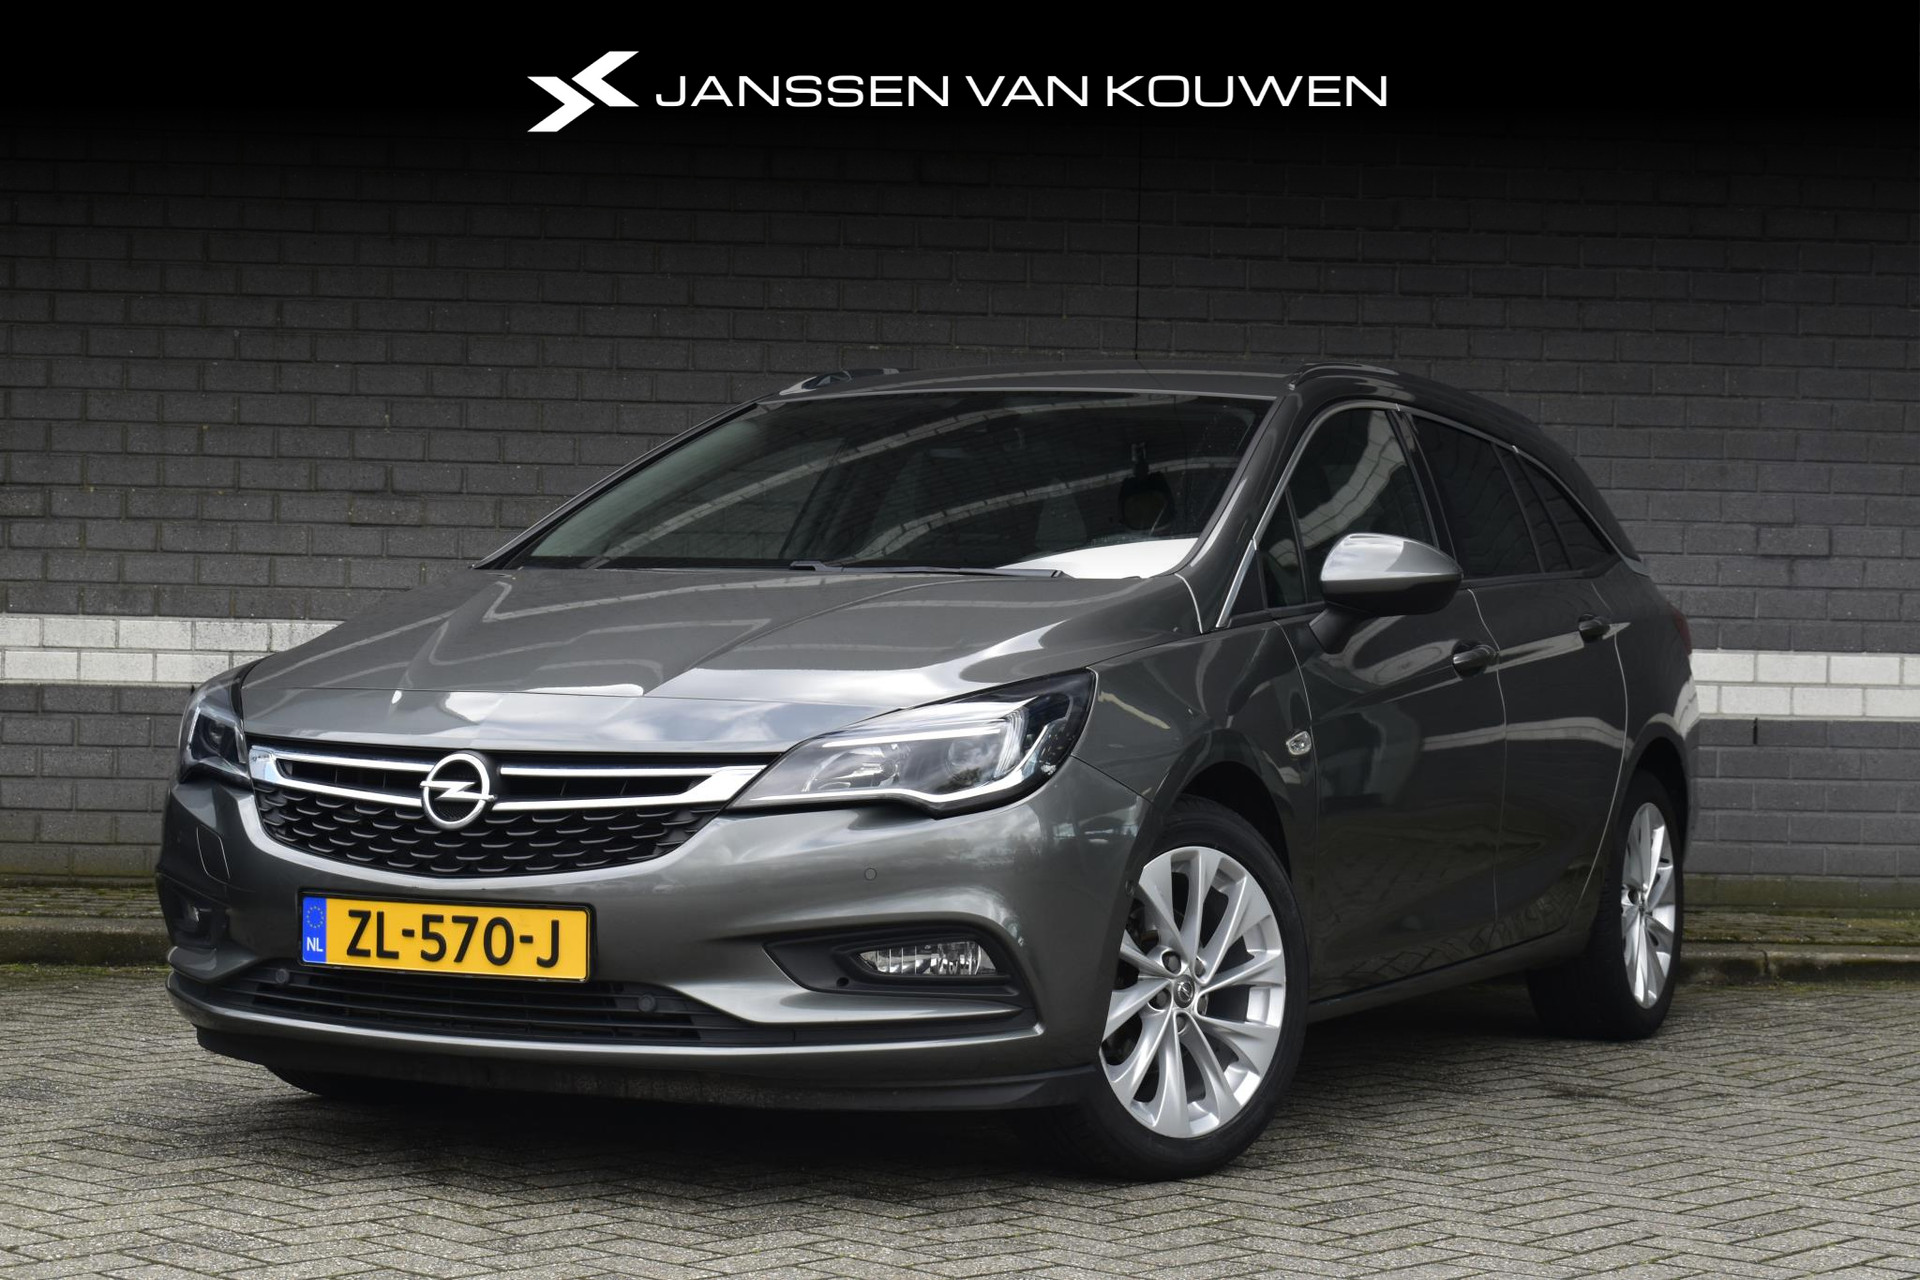 Opel Astra Sports Tourer 1.4 Turbo Innovation / Automaat / Winter pakket / Camera / Navigatie bij viaBOVAG.nl